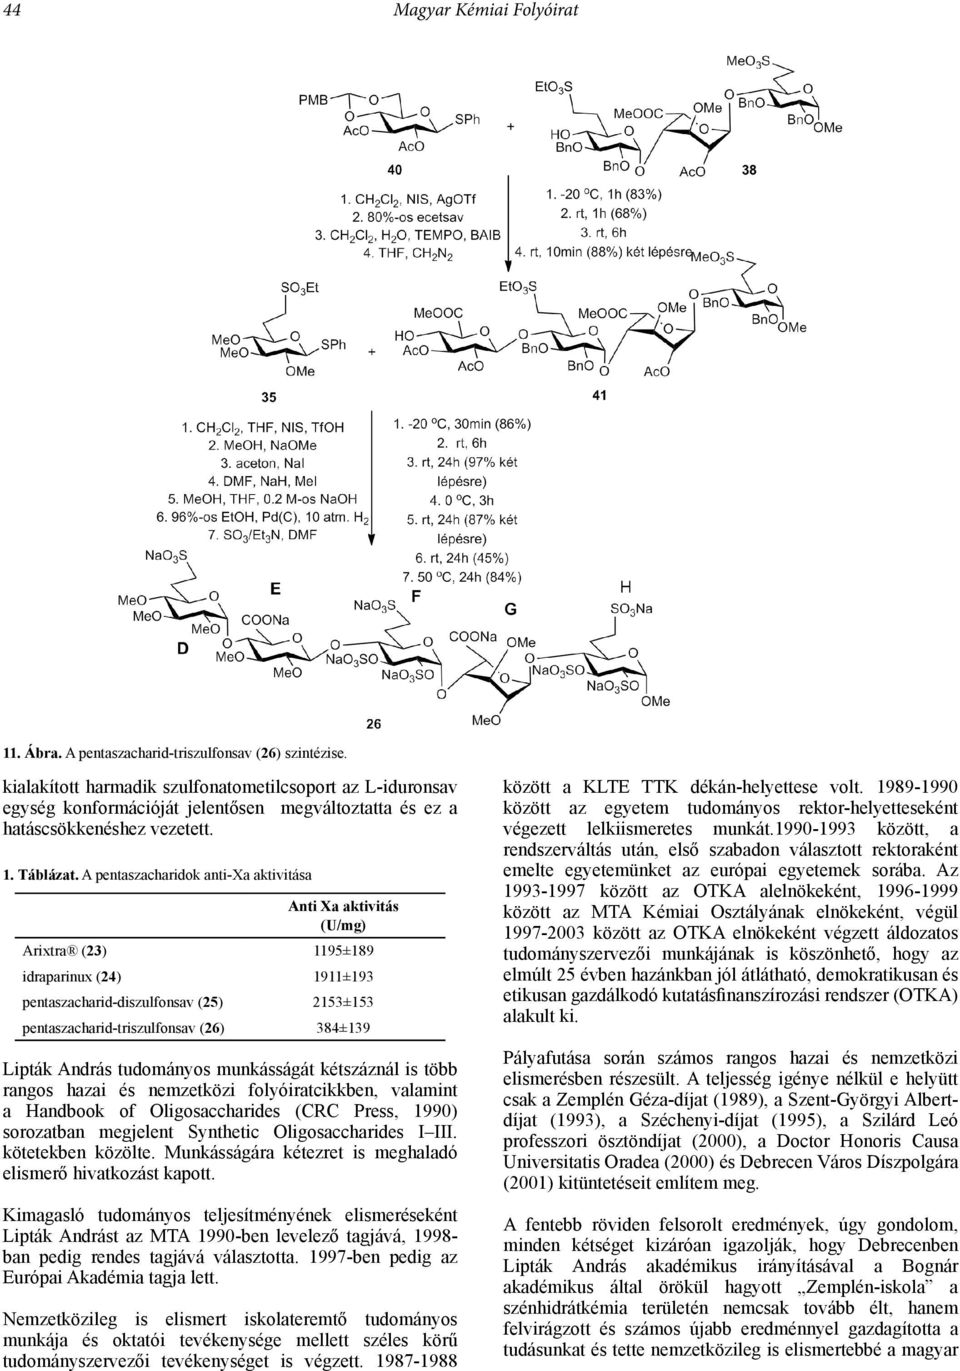 A pentaszacharidok anti-xa aktivitása Anti Xa aktivitás (U/mg) Arixtra (23) 1195±189 idraparinux (24) 1911±193 pentaszacharid-diszulfonsav (25) 2153±153 pentaszacharid-triszulfonsav (26) 384±139